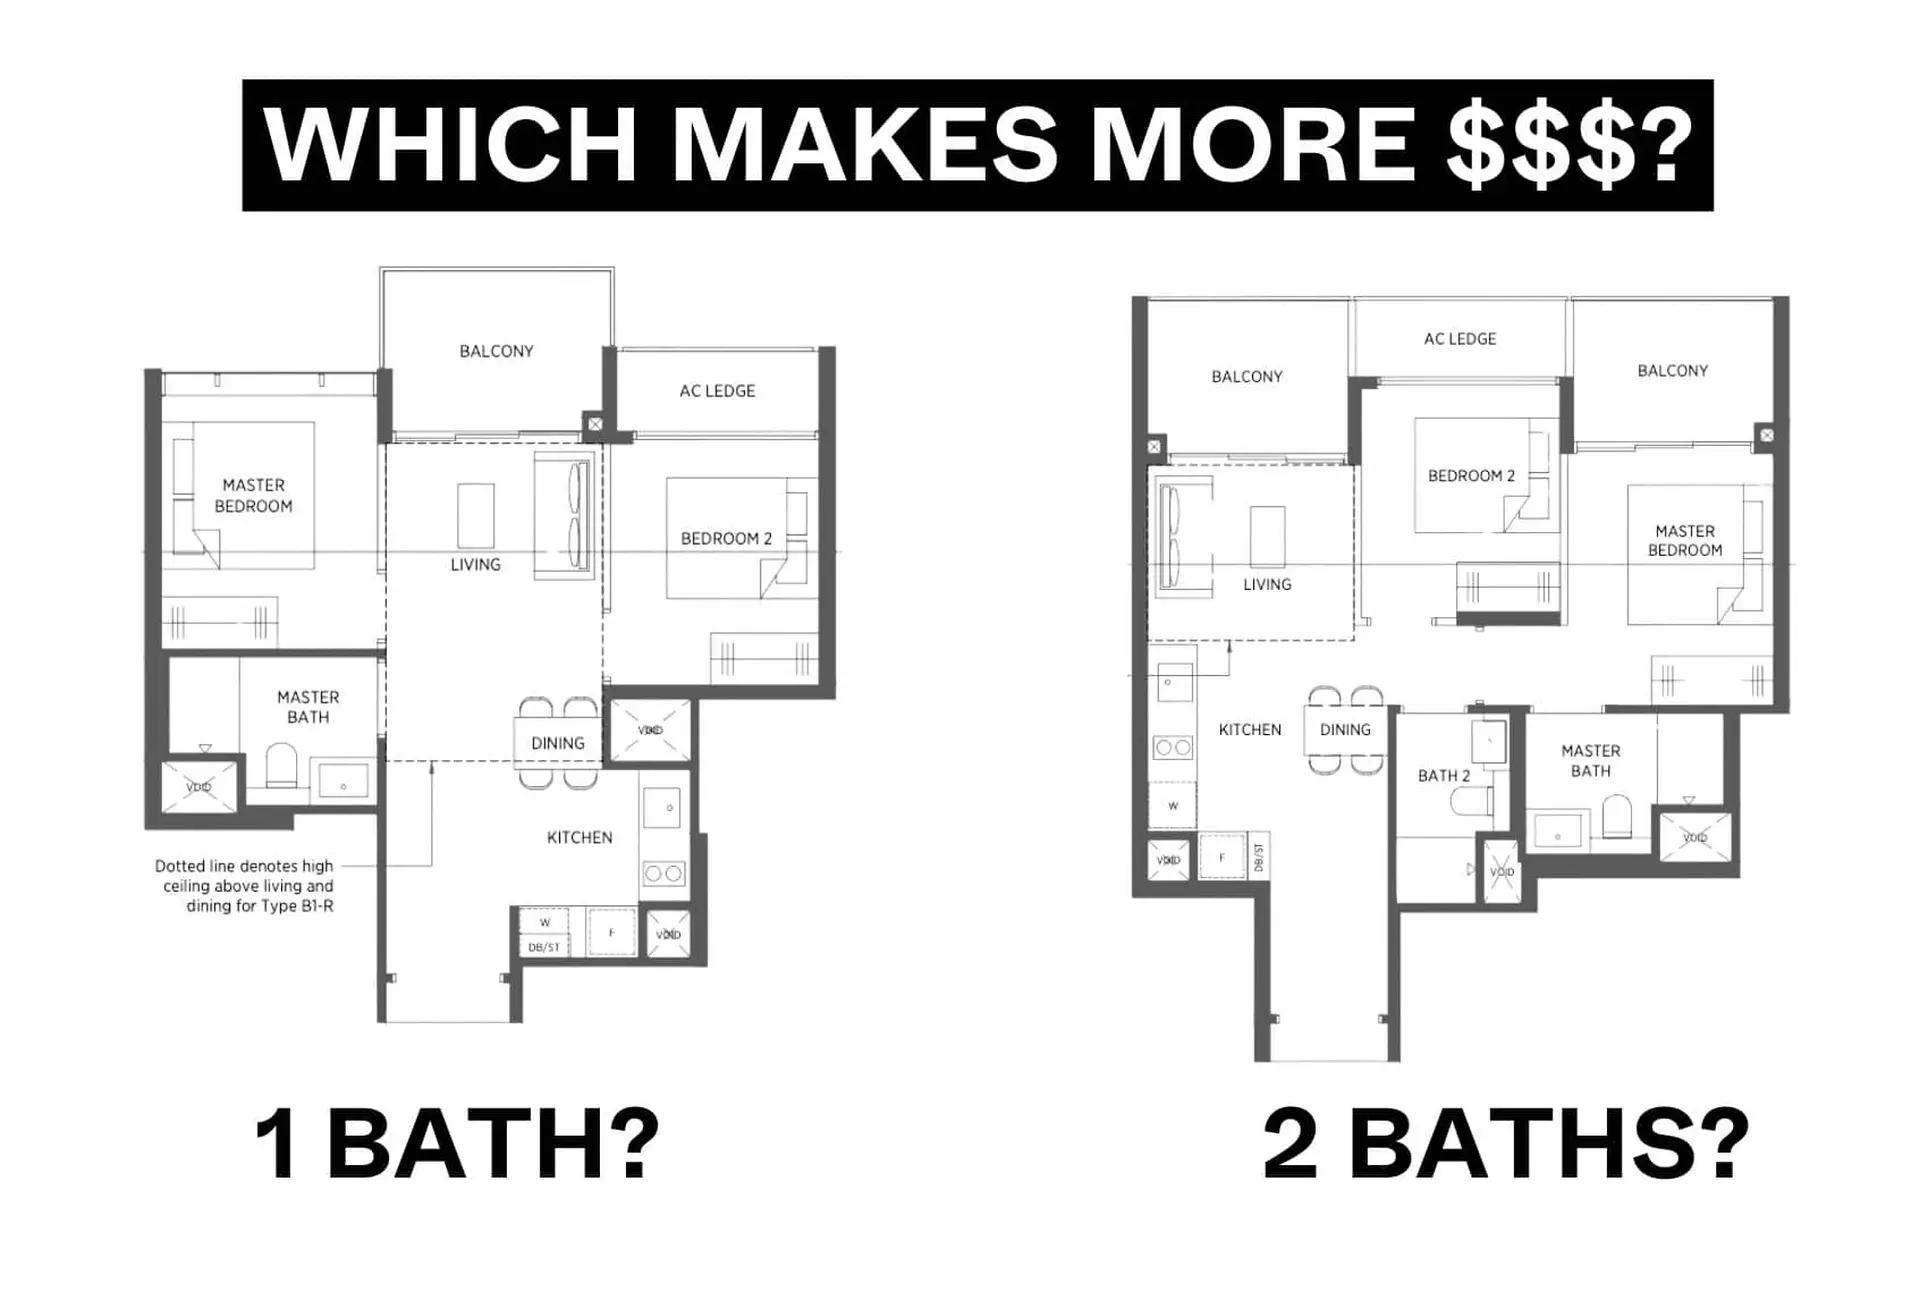 2 bedroom 1 bathroom vs 2 bedroom 2 bathroom